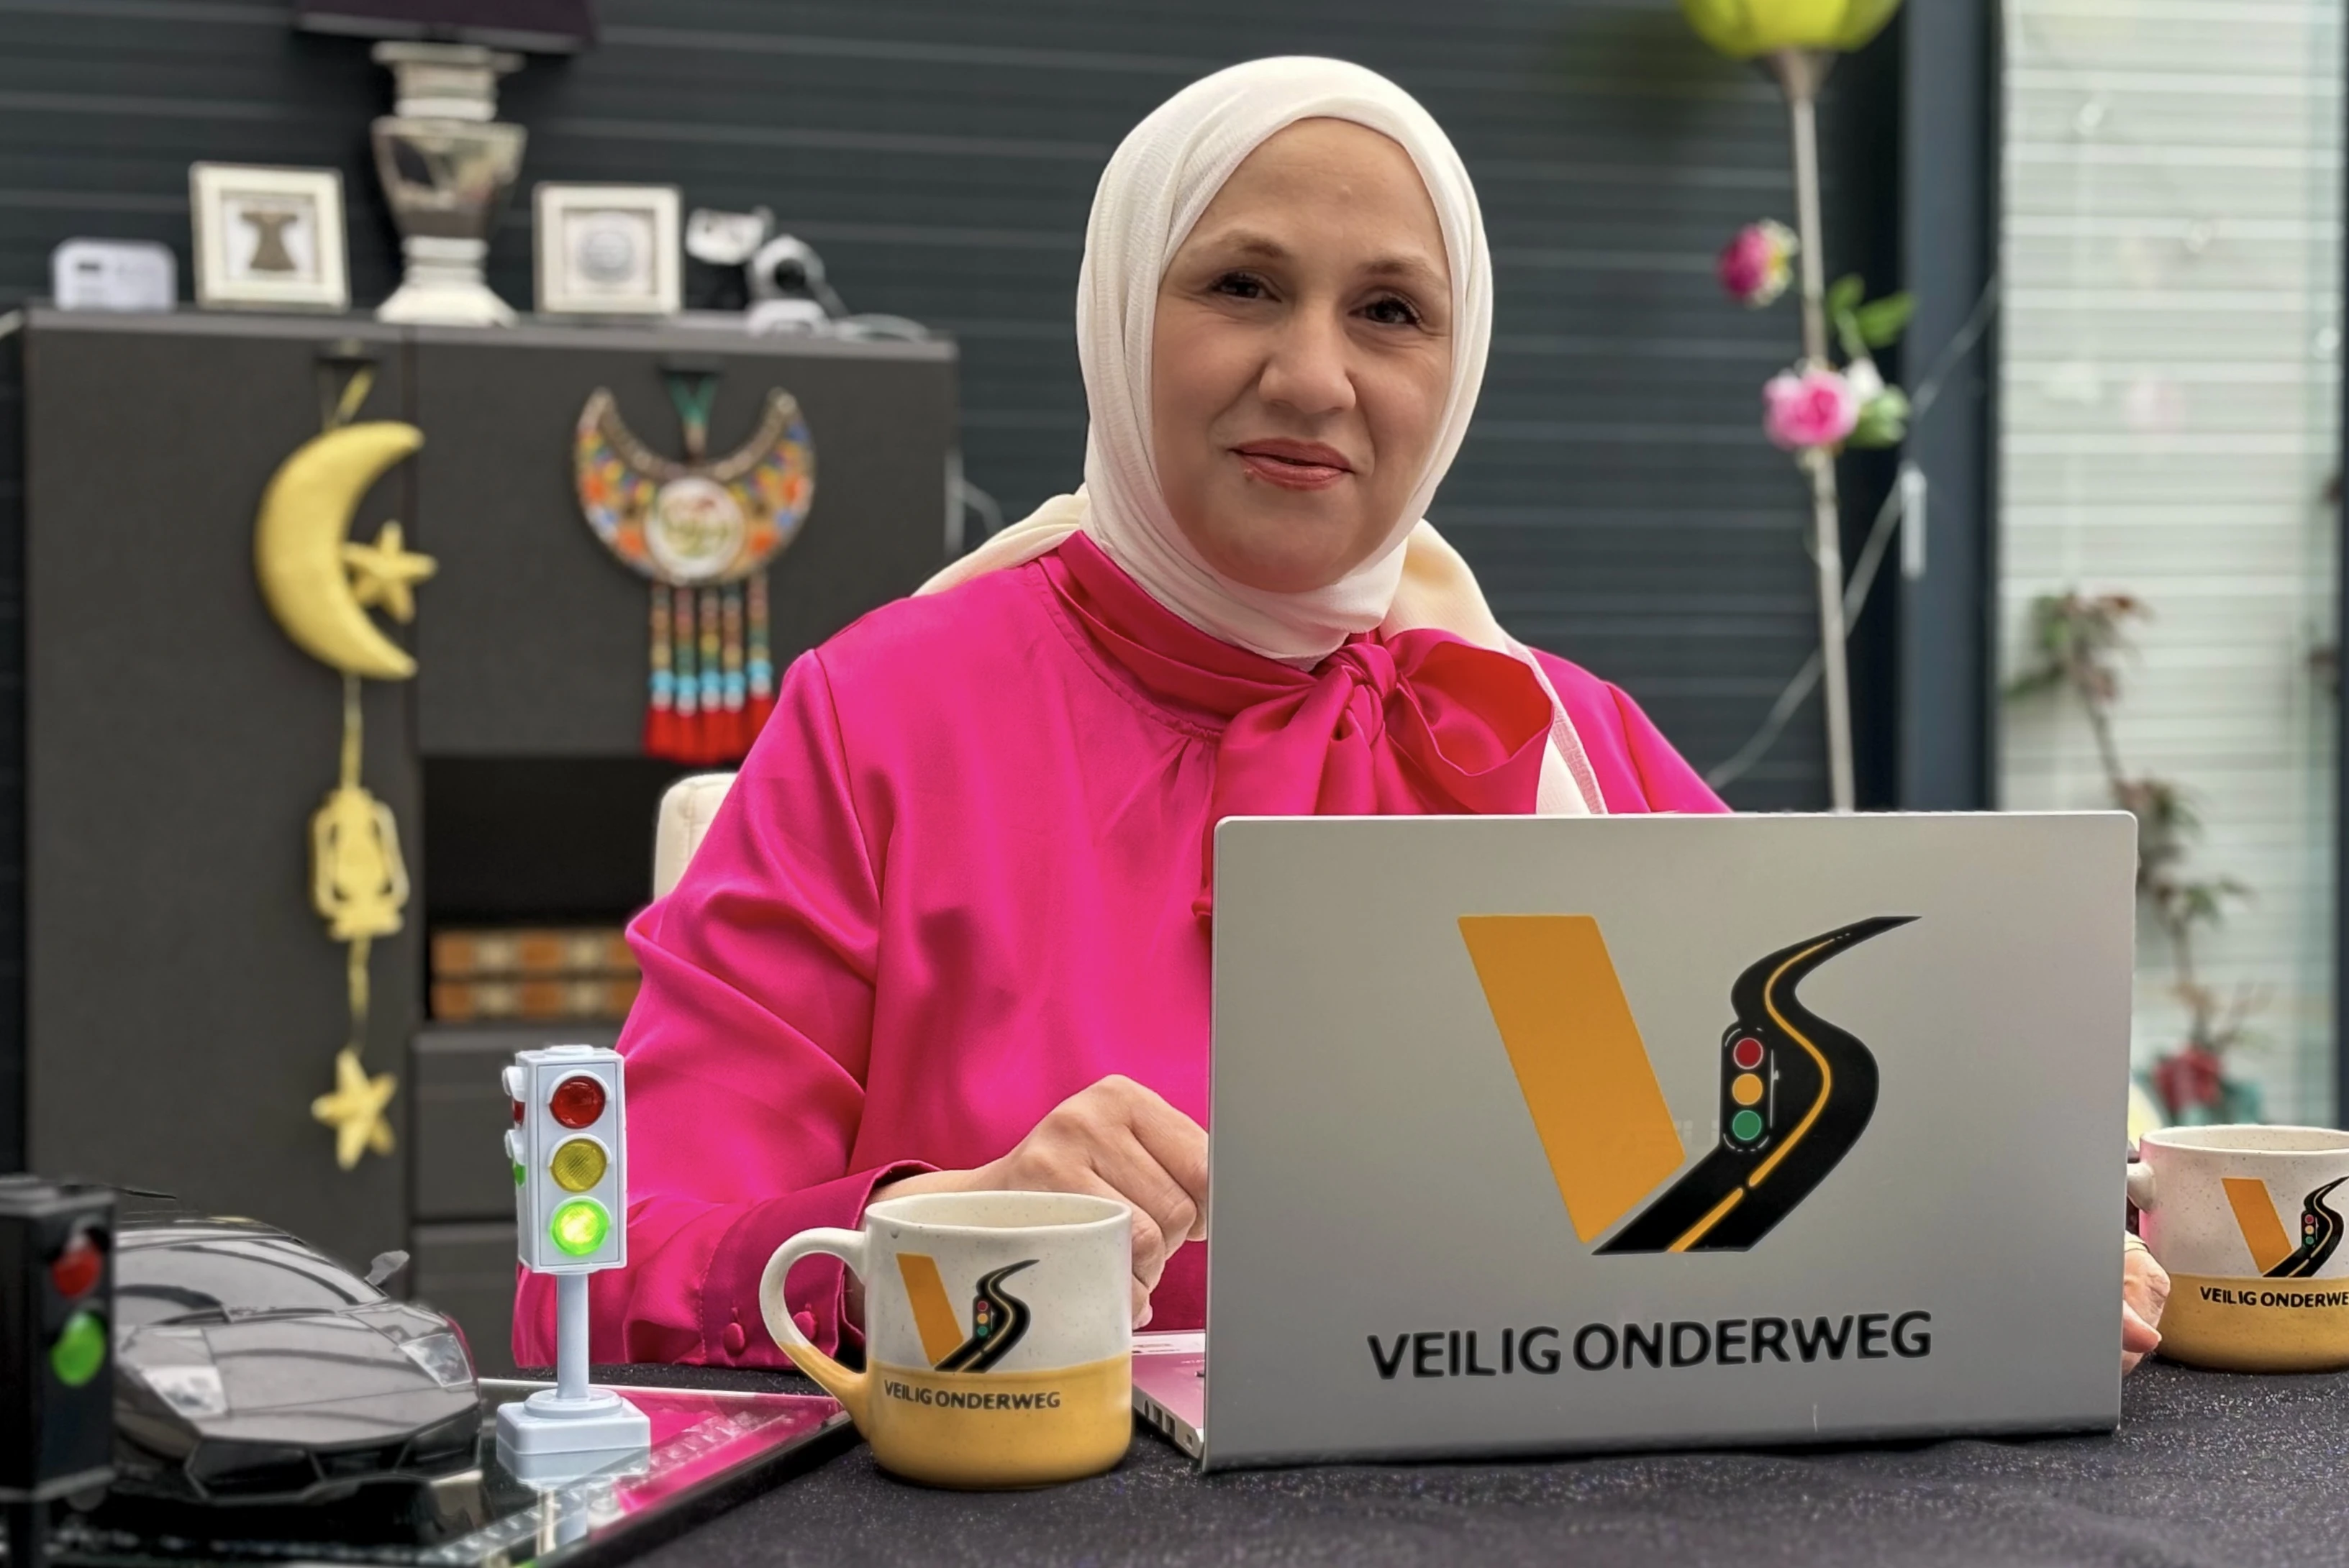 Loubna Bazarbashi, 'Veilig Onderweg' adlı şirketiyle teorik trafik dersleri veriyor. Loubna dizüstü bilgisayarının başında oturuyor.